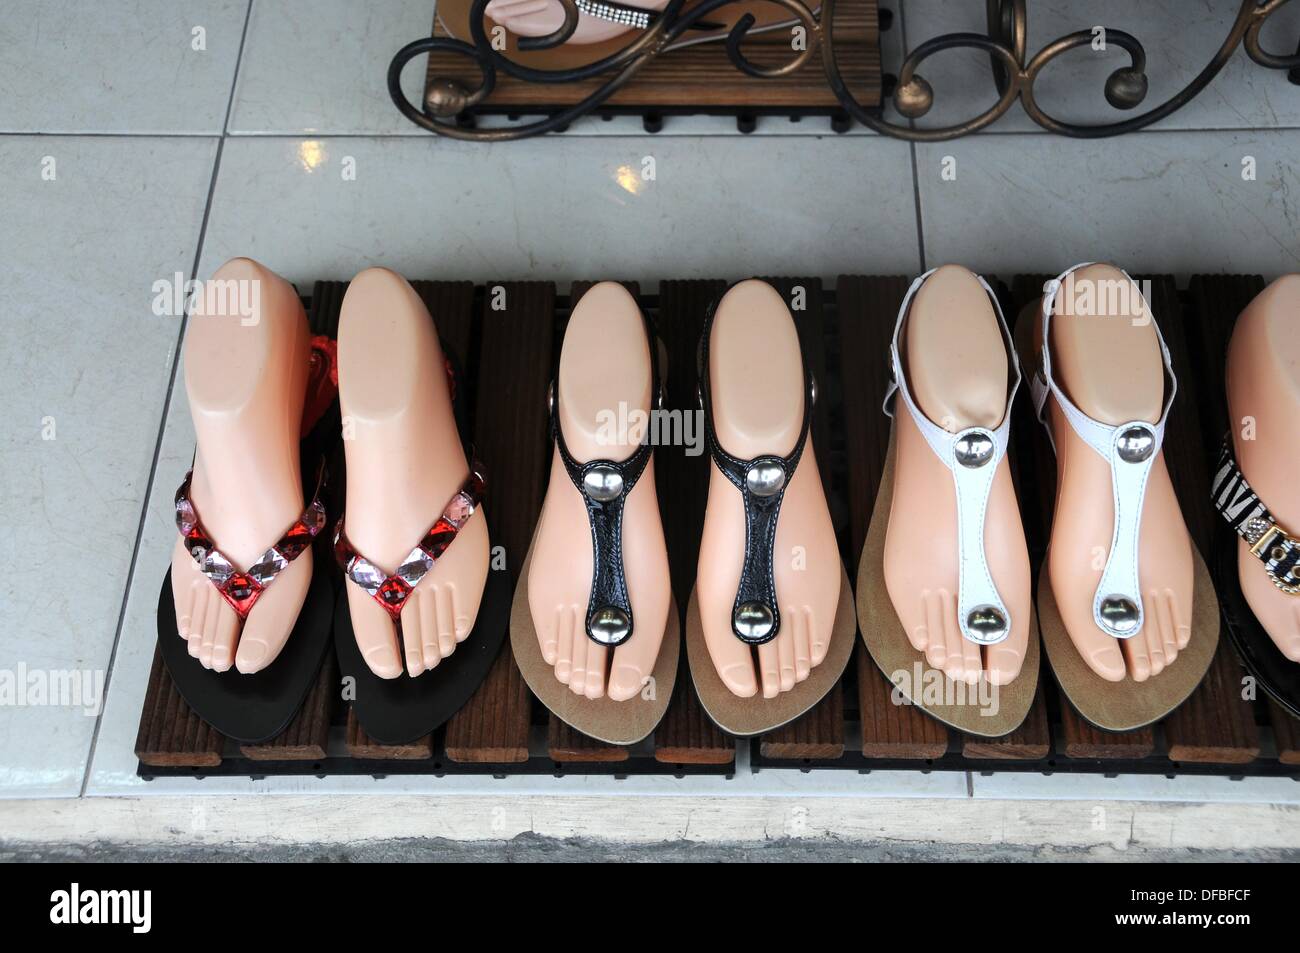 Modelle mit exklusiven Damen Sandalen in einem New Yorker Schaufenster  Stockfotografie - Alamy